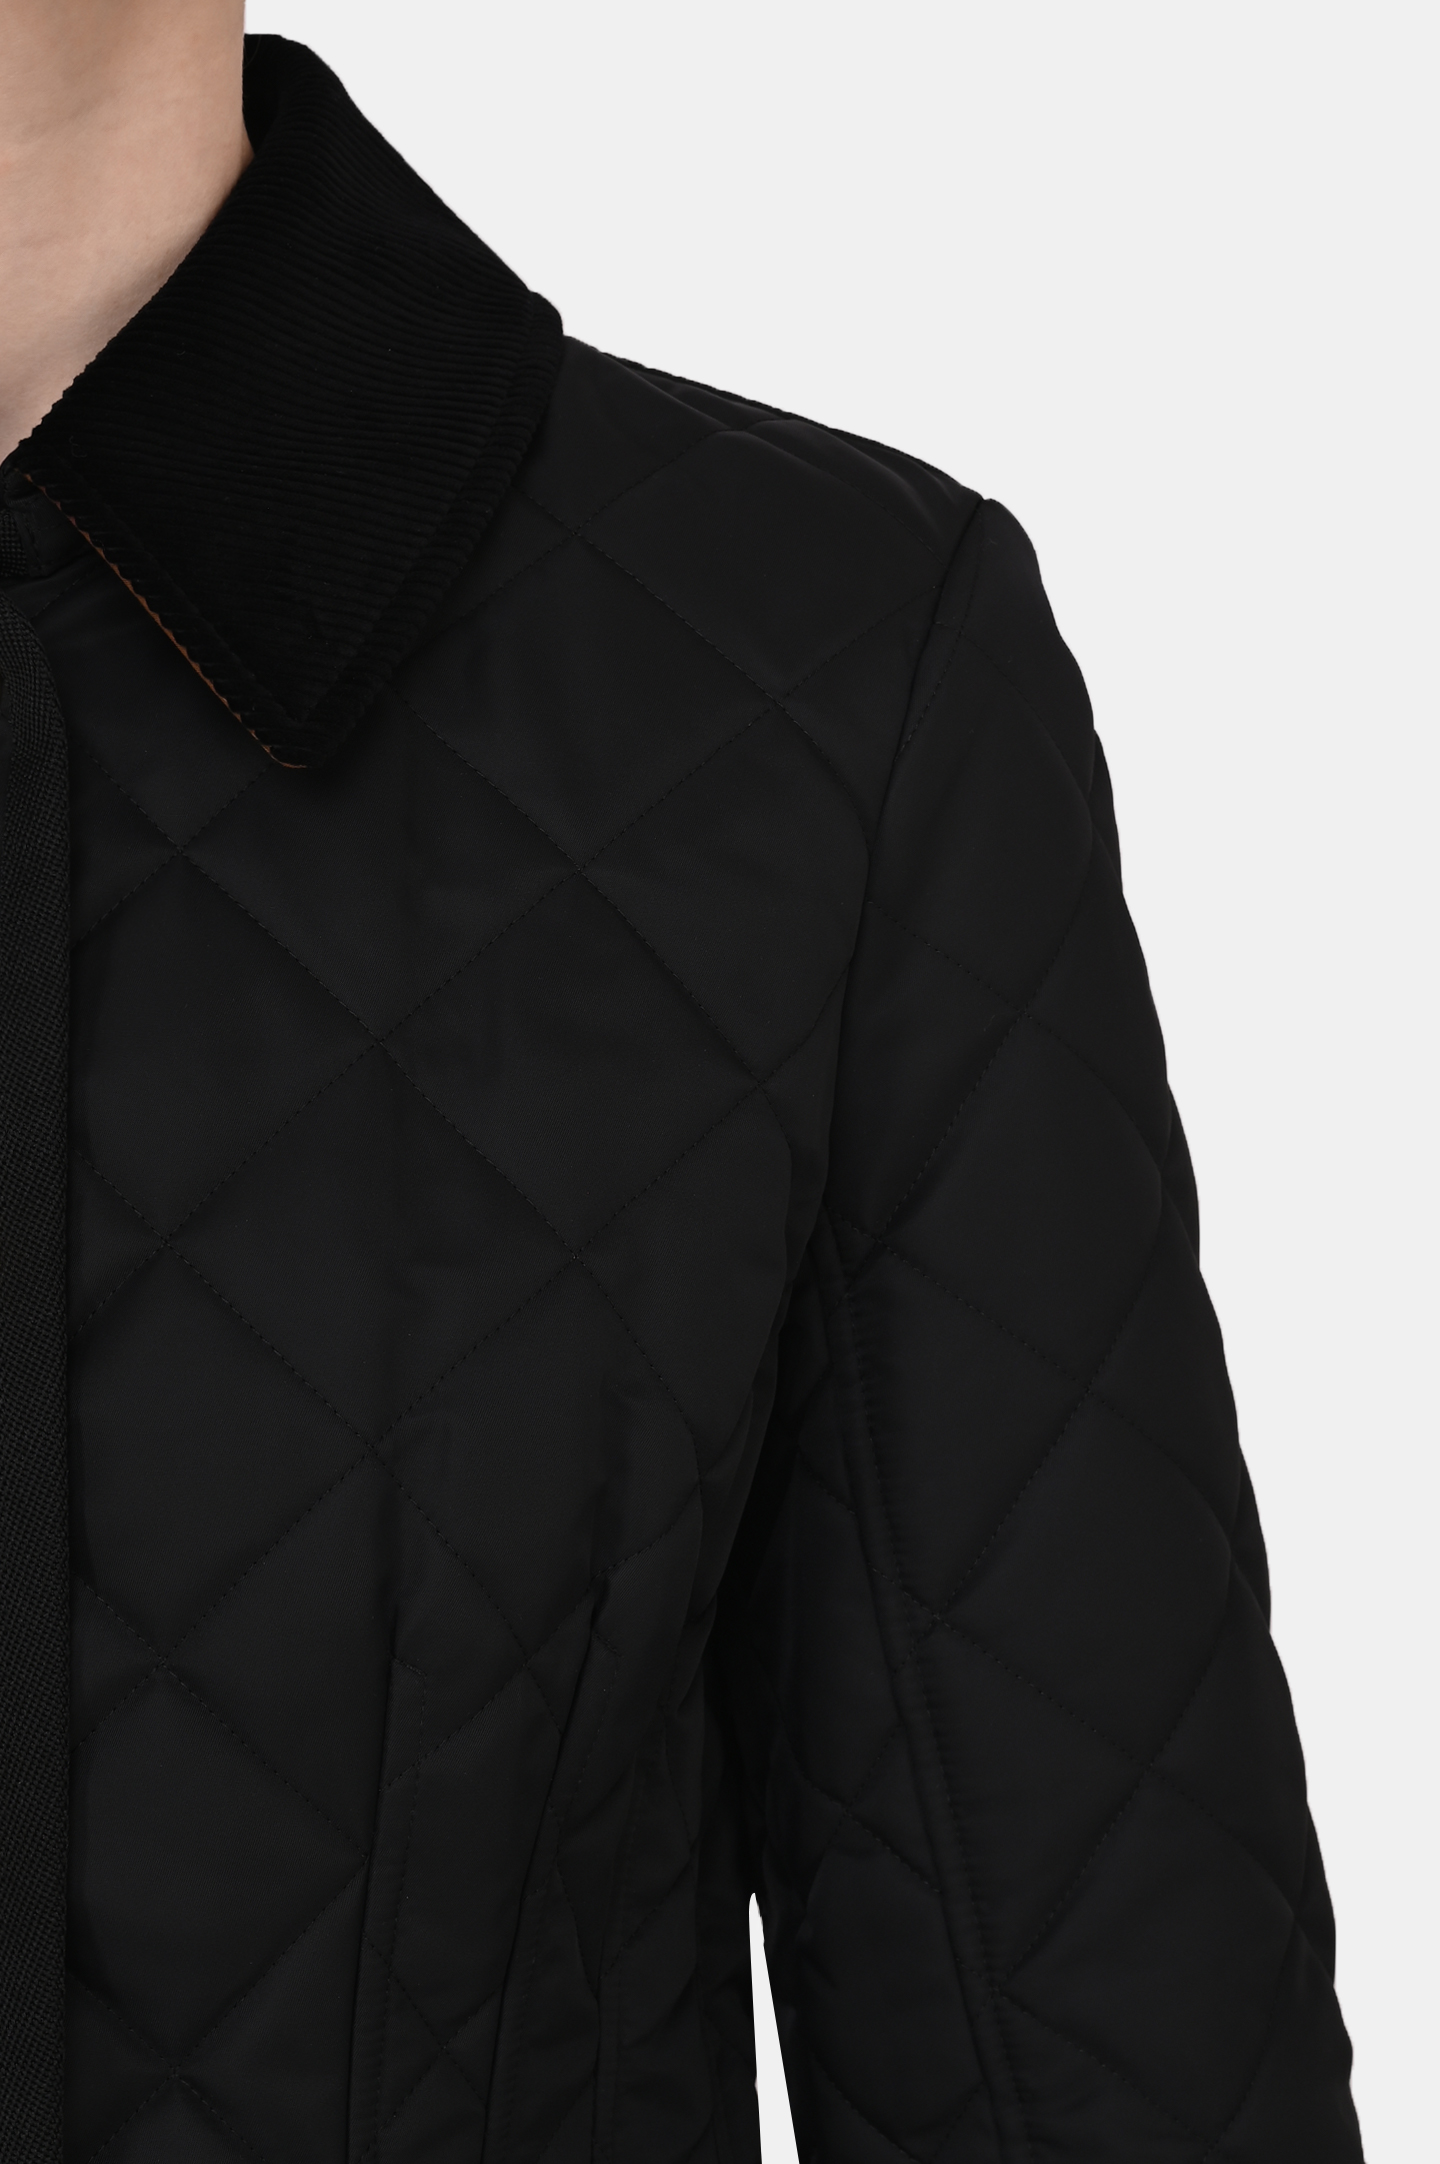 Куртка BURBERRY 8051724, цвет: Черный, Женский